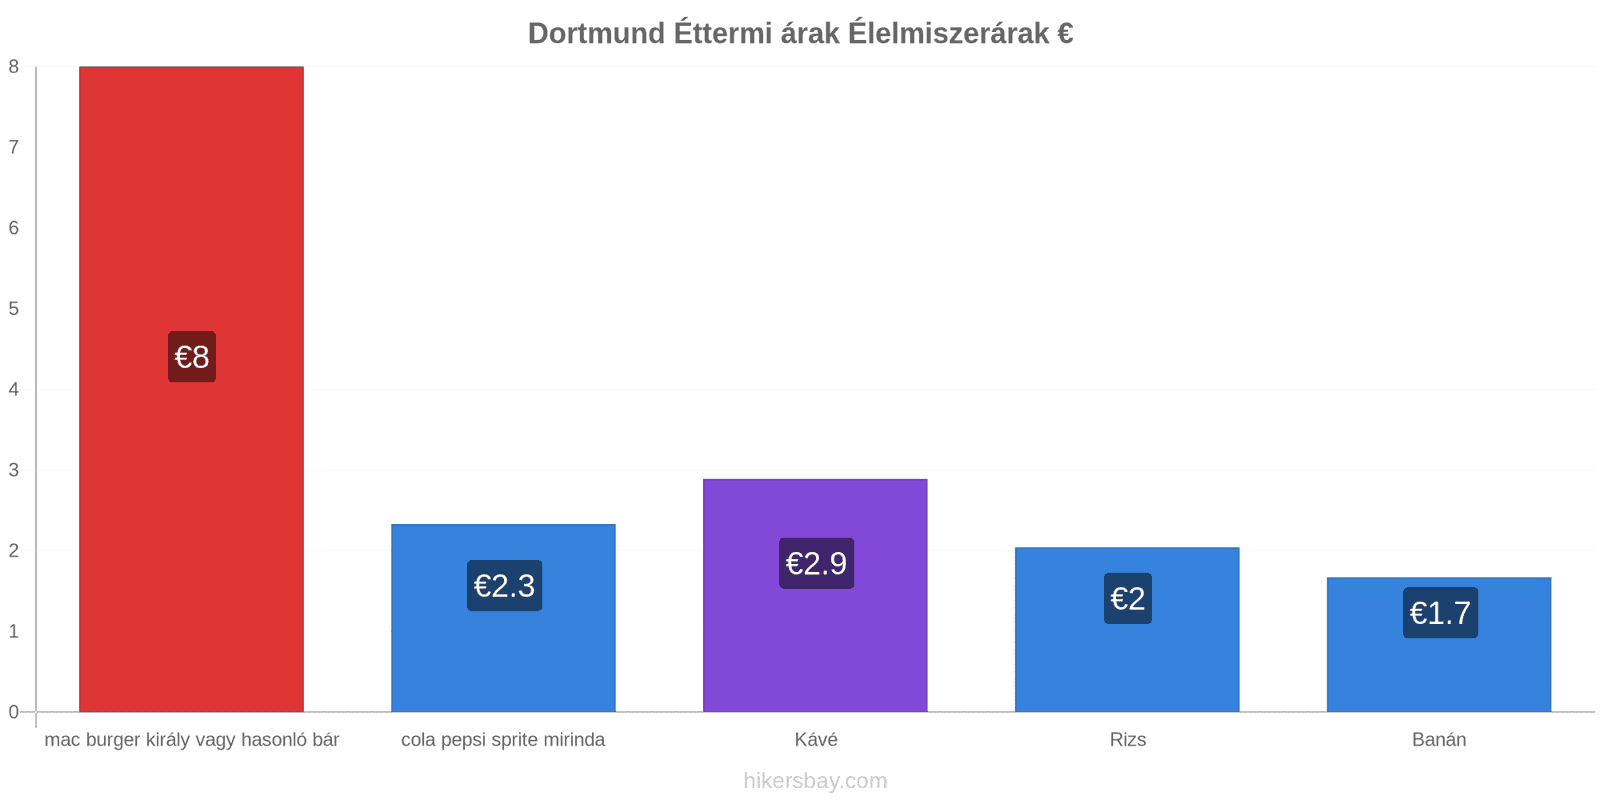 Dortmund ár változások hikersbay.com